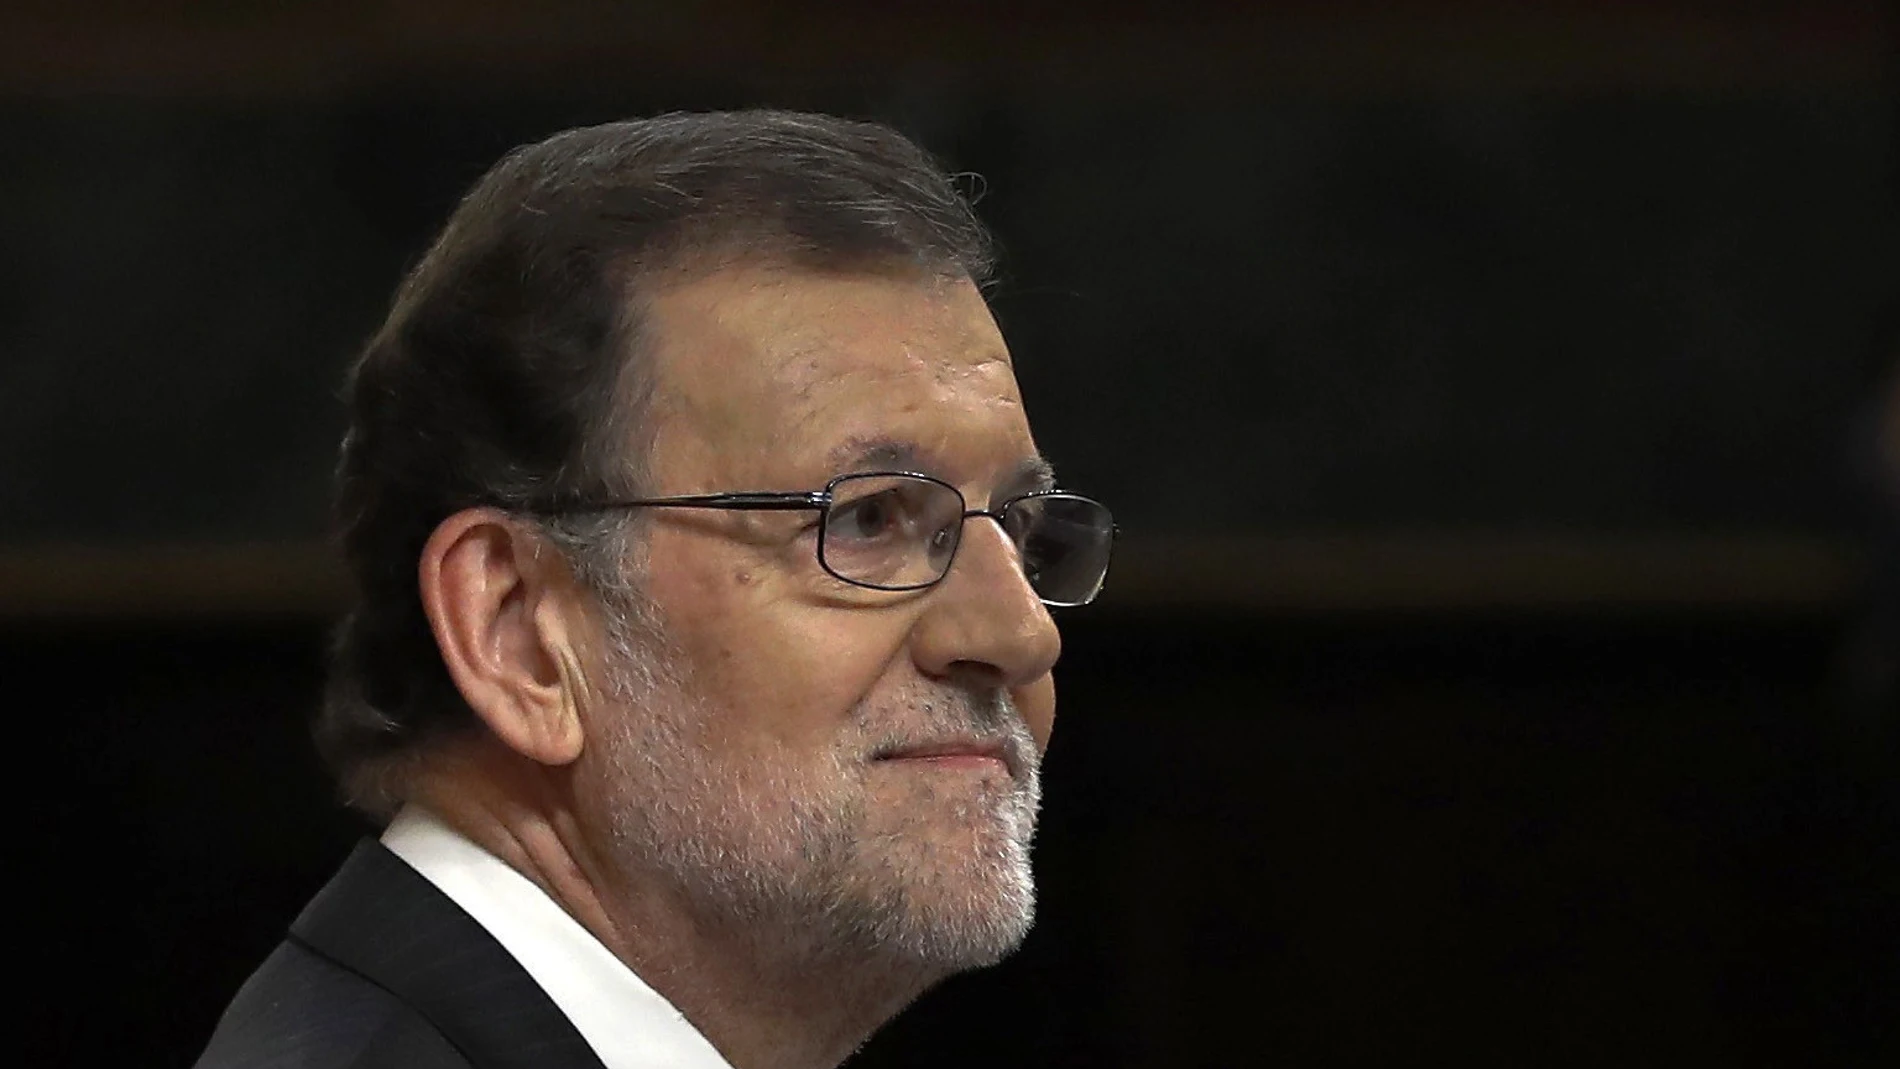 Mariano Rajoy, presidente del Gobierno en funciones